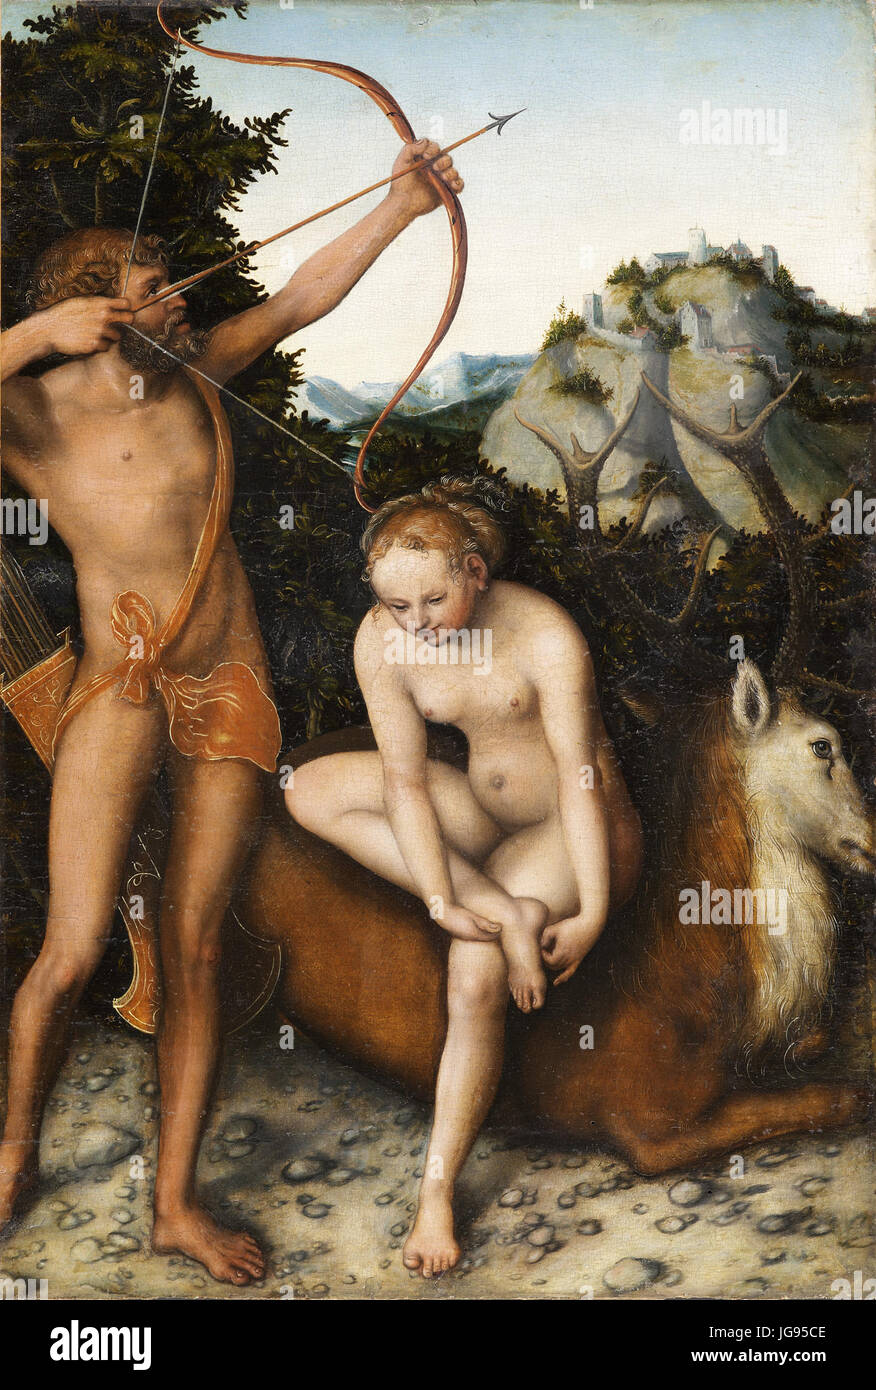 Lucas Cranach d.Ä. - Apollo und Diana (Musées royaux des Beaux-Arts de Belgique, Brussels) Stock Photo